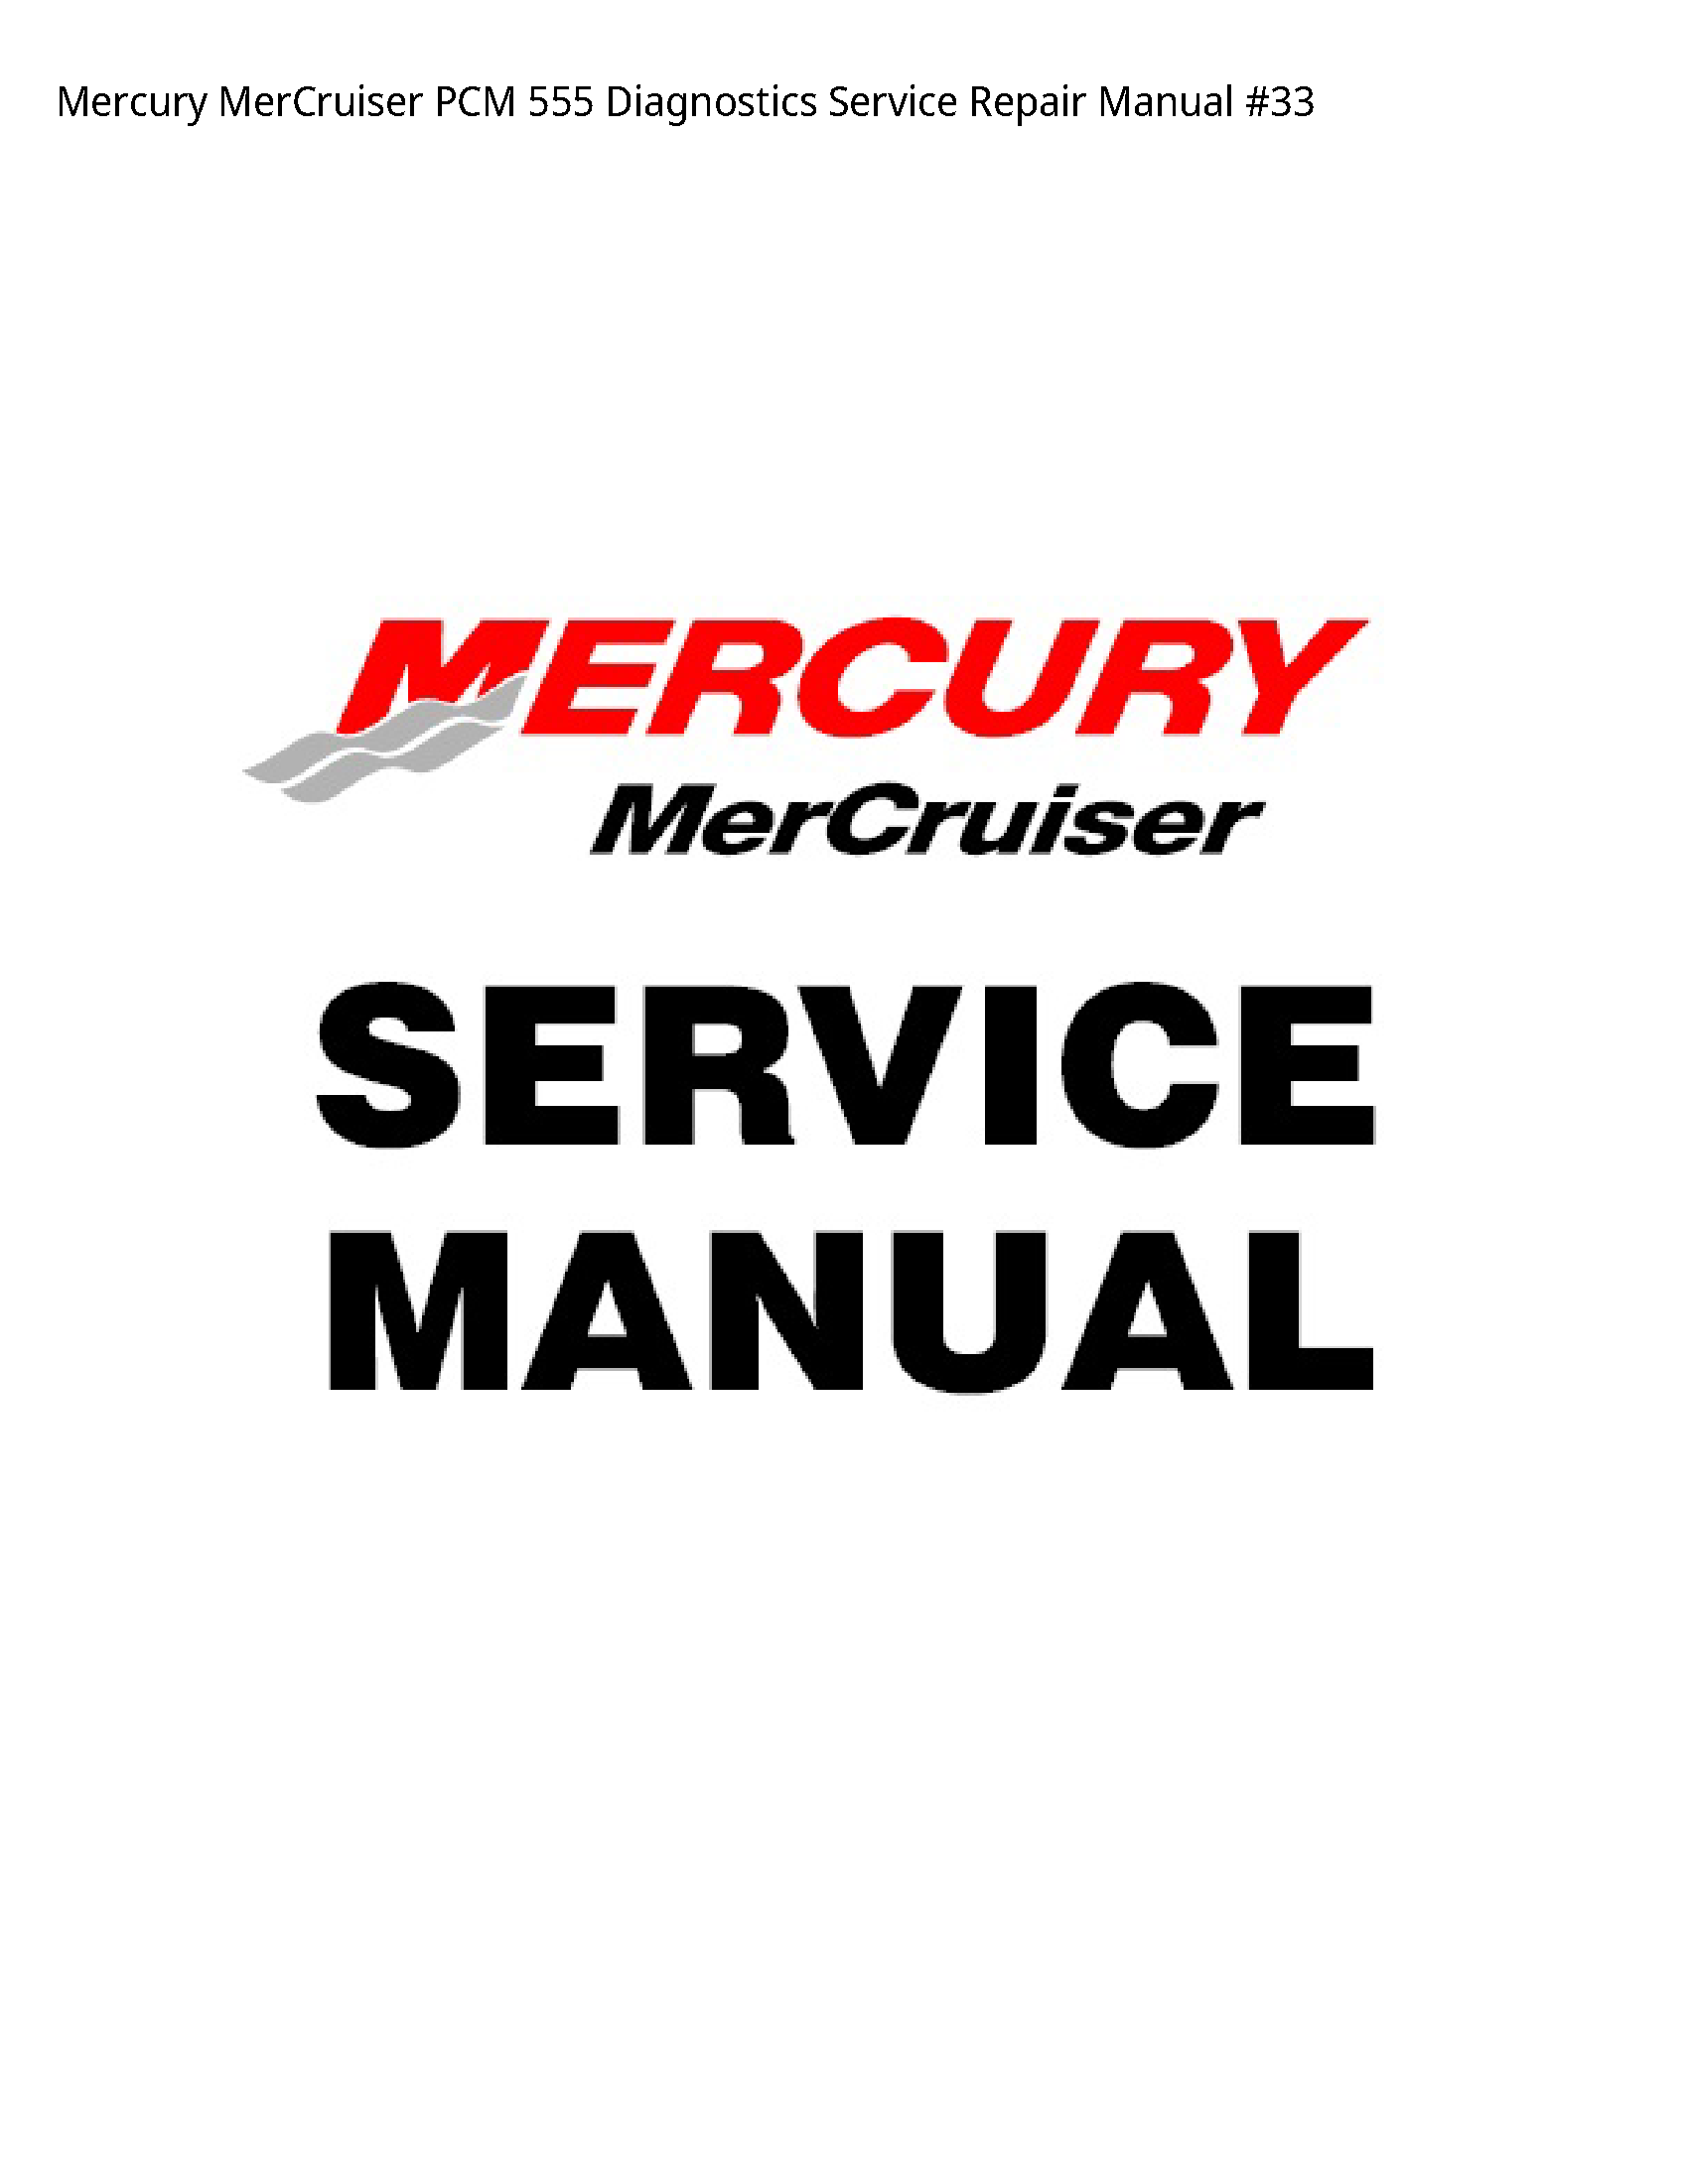 Mercury 555 MerCruiser PCM Diagnostics manual